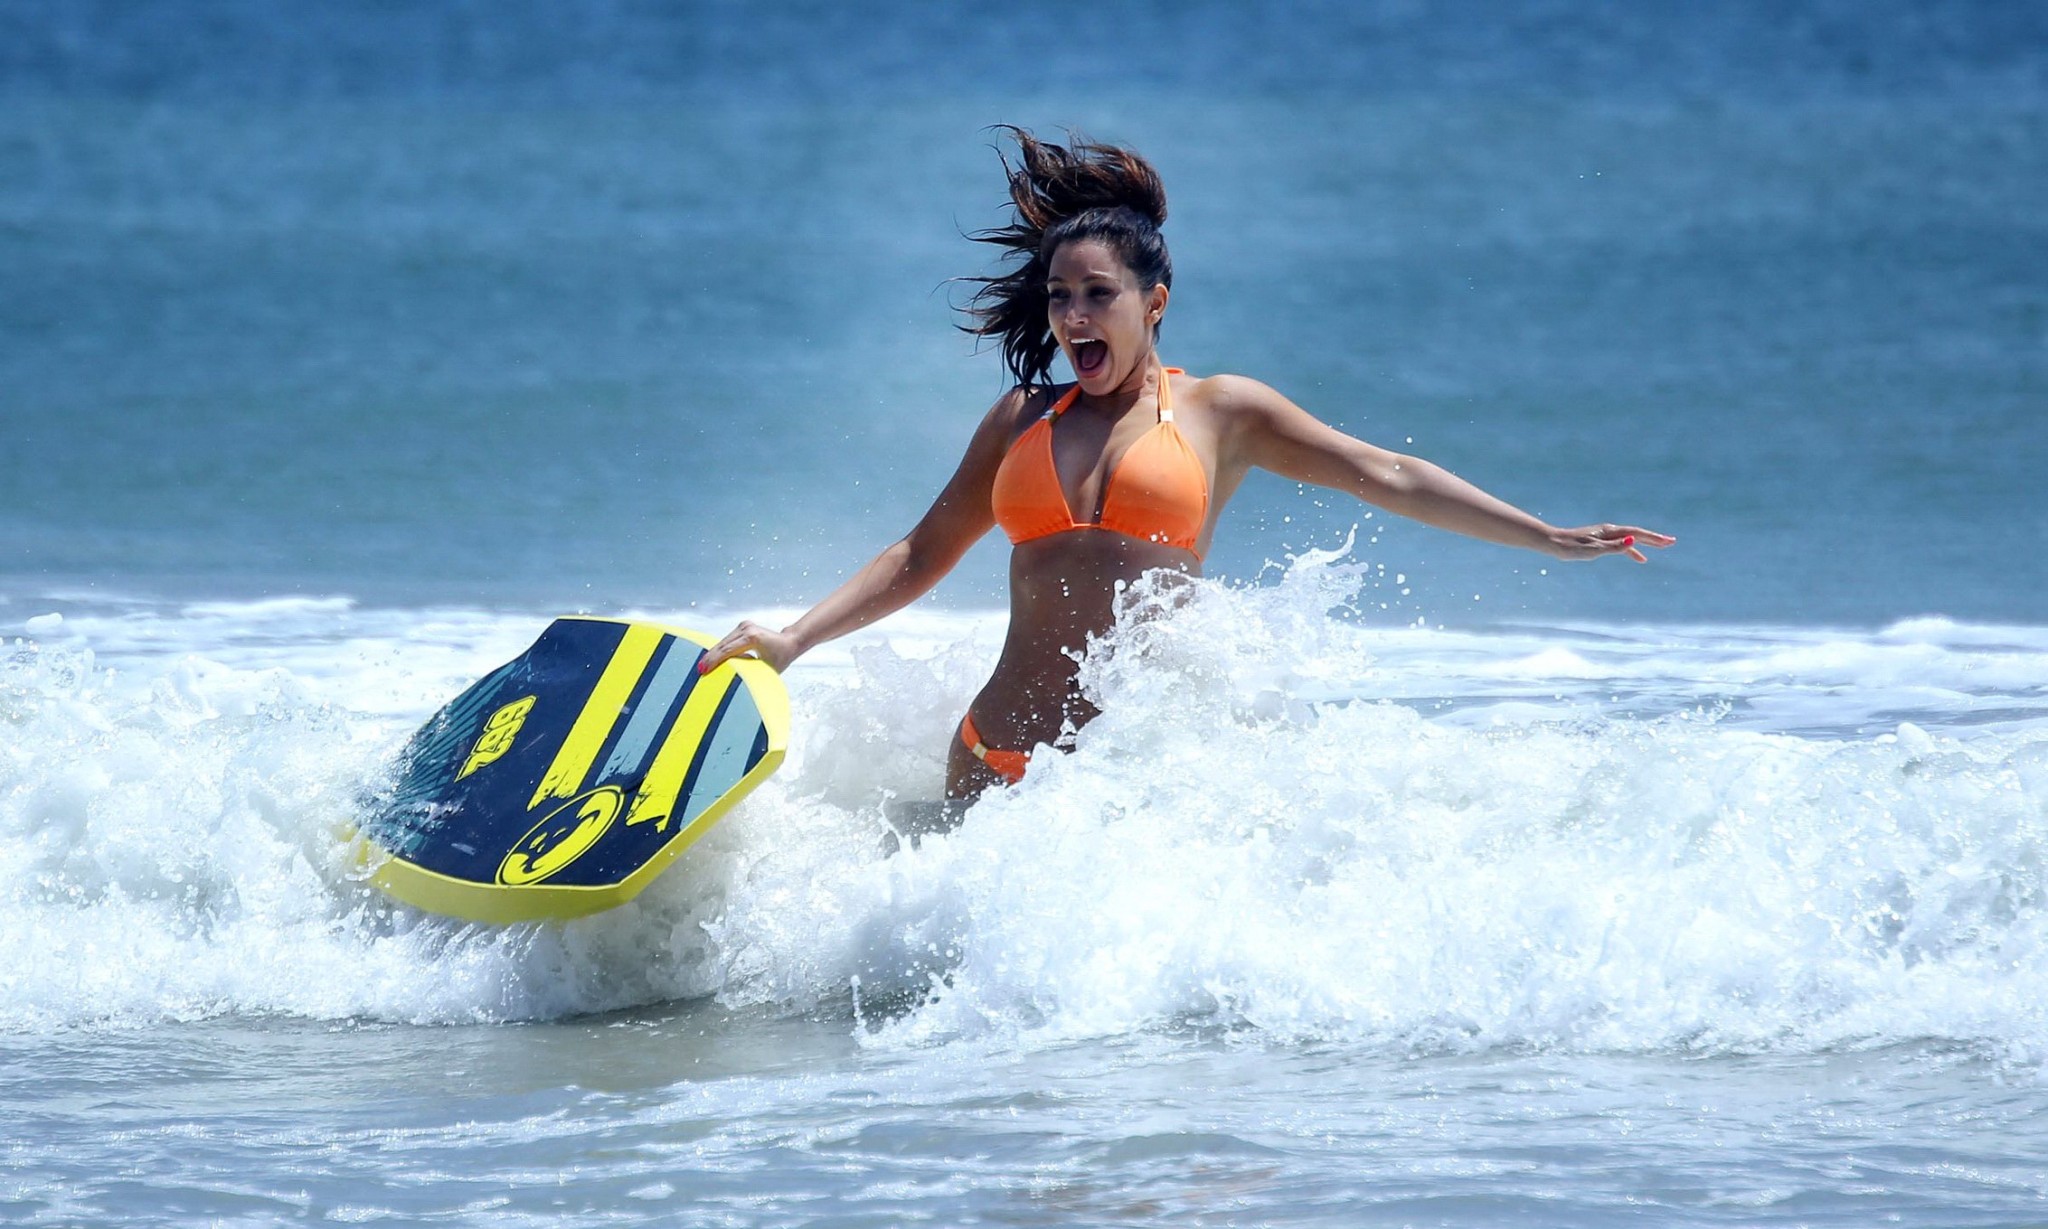 Kim Kardashian shows pokies in wet orange bikini while surfing in Mexico #75262272